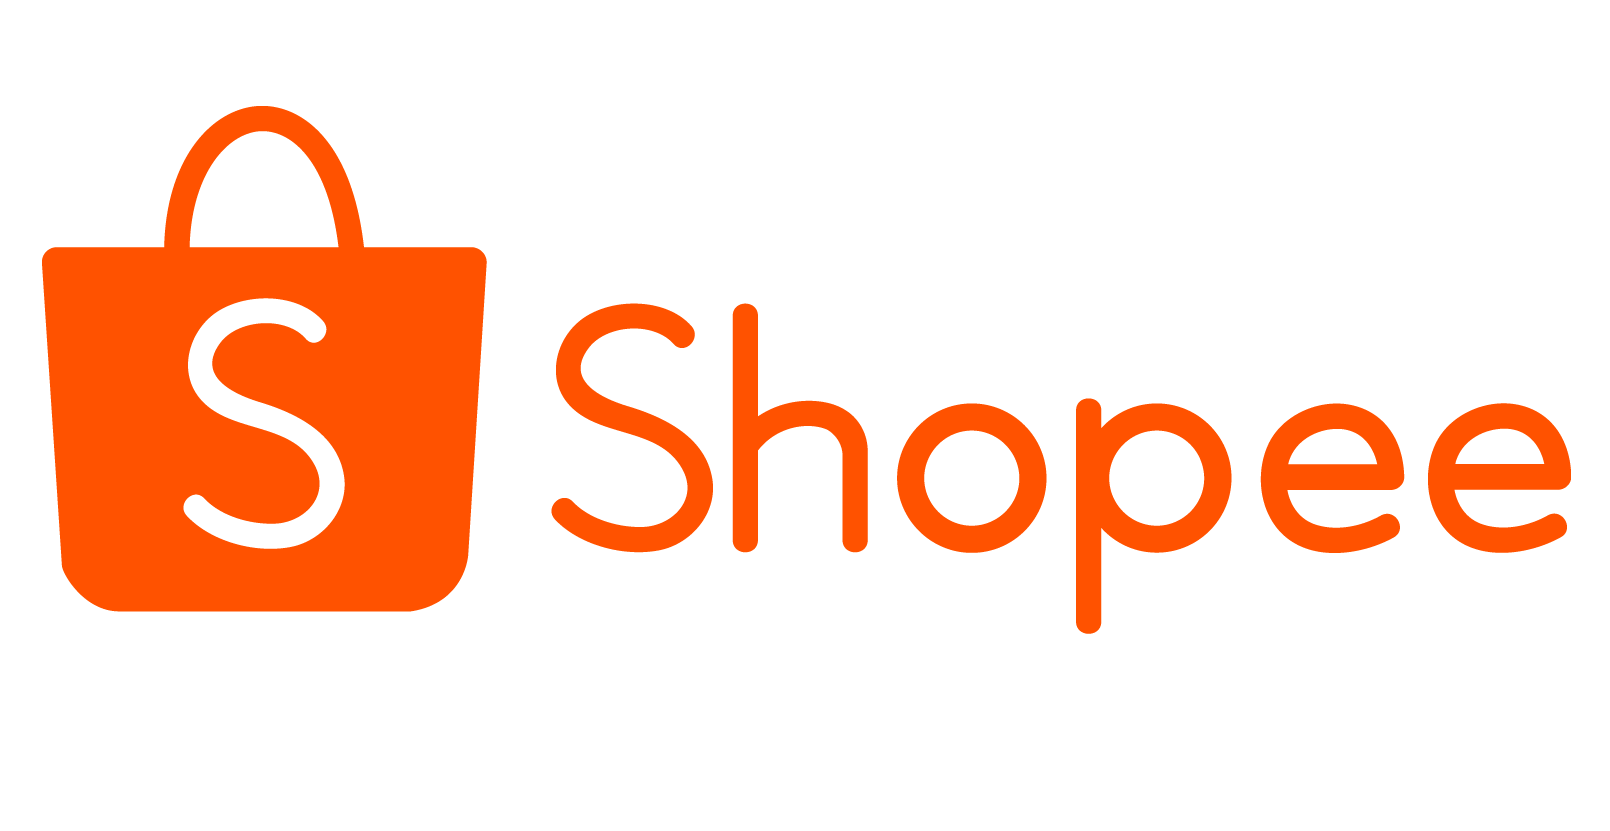 Mua Khoá Laptop Khoá Chìa Bảo Về Laptop giá rẻ tại Shopee